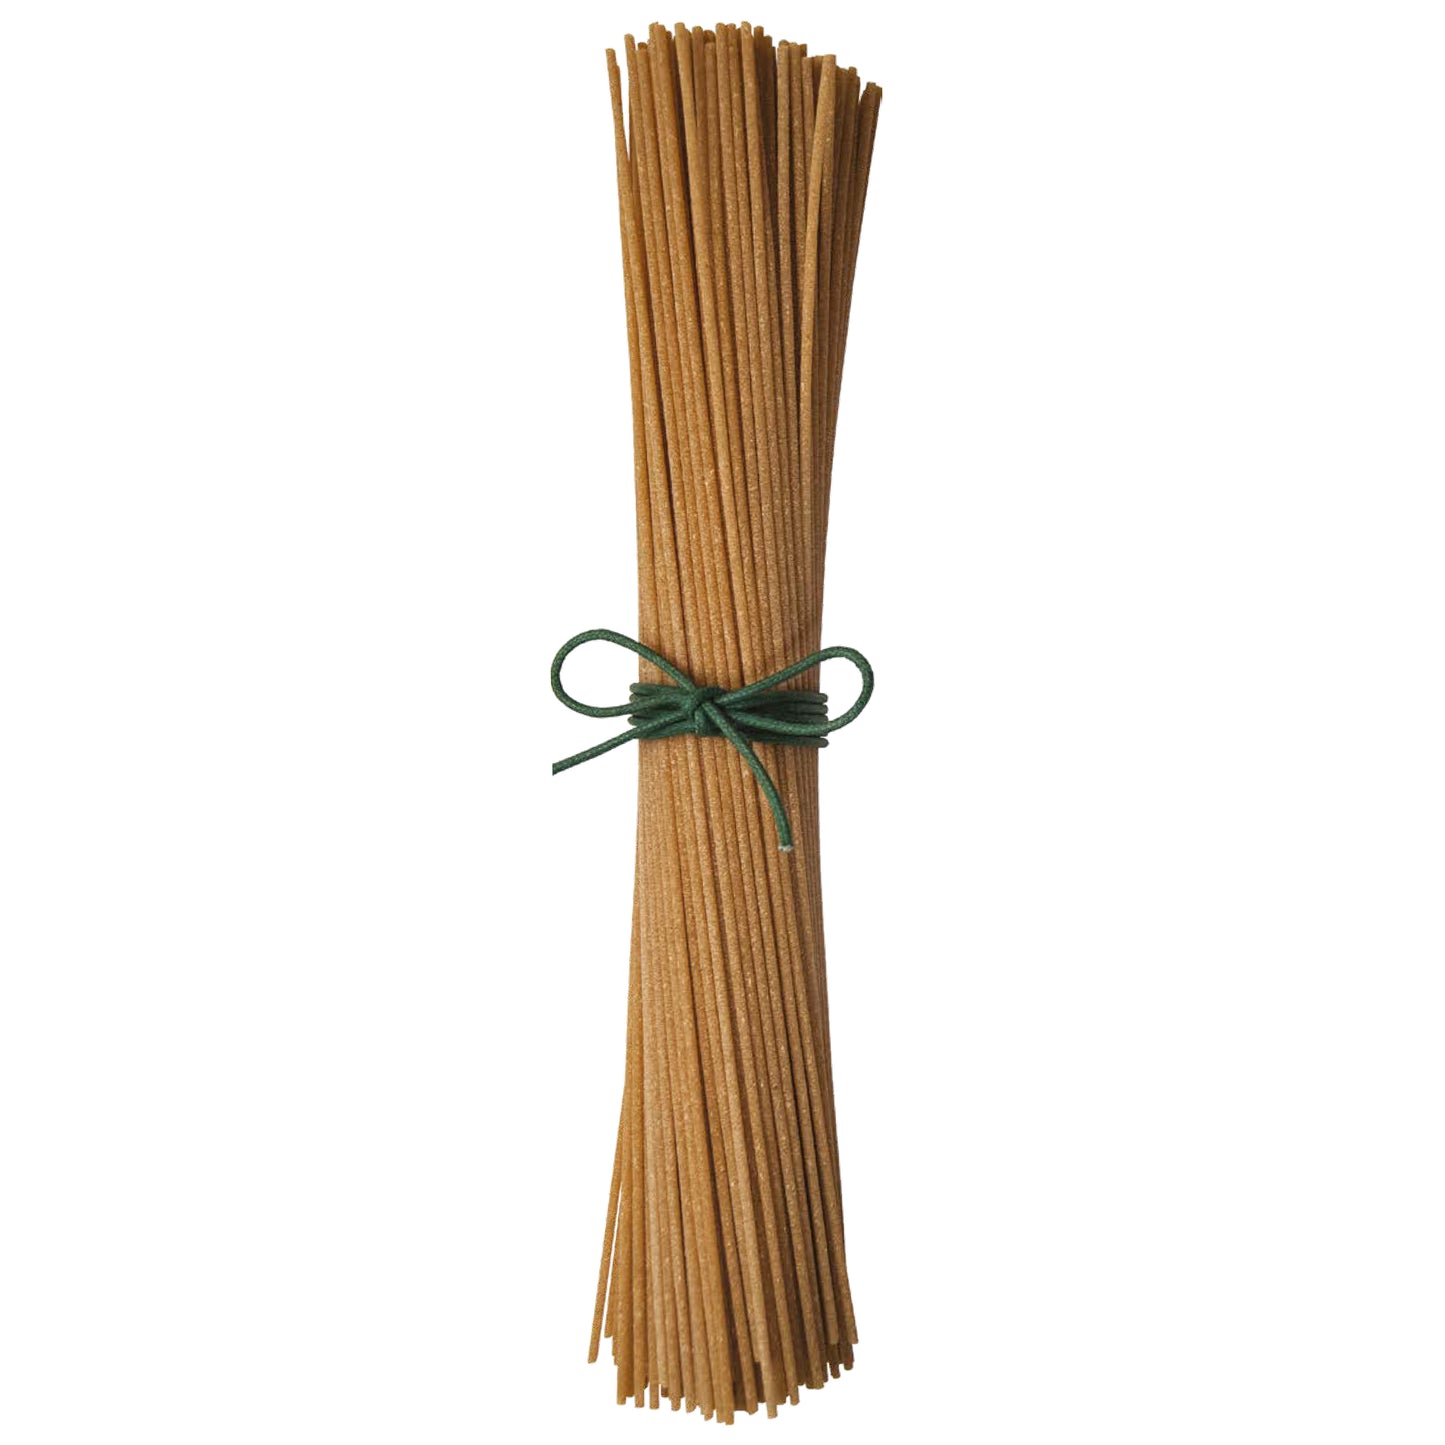 Whole Wheat Spaghetti